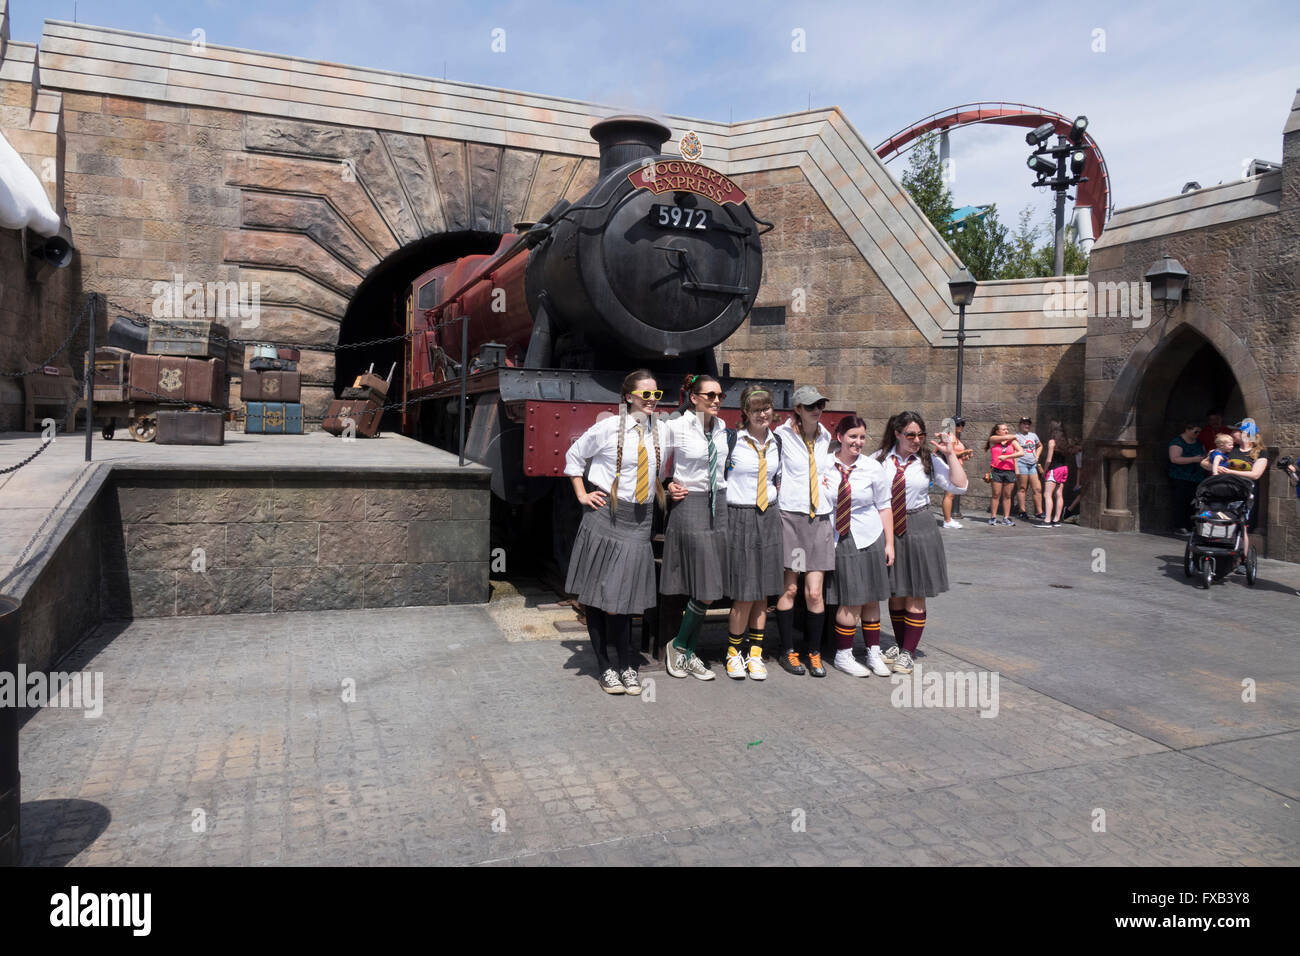 Giovani donne abbigliate in British School girl uniformi posano con il castello di Hogwarts Express Train Universal Studios Theme Park Foto Stock